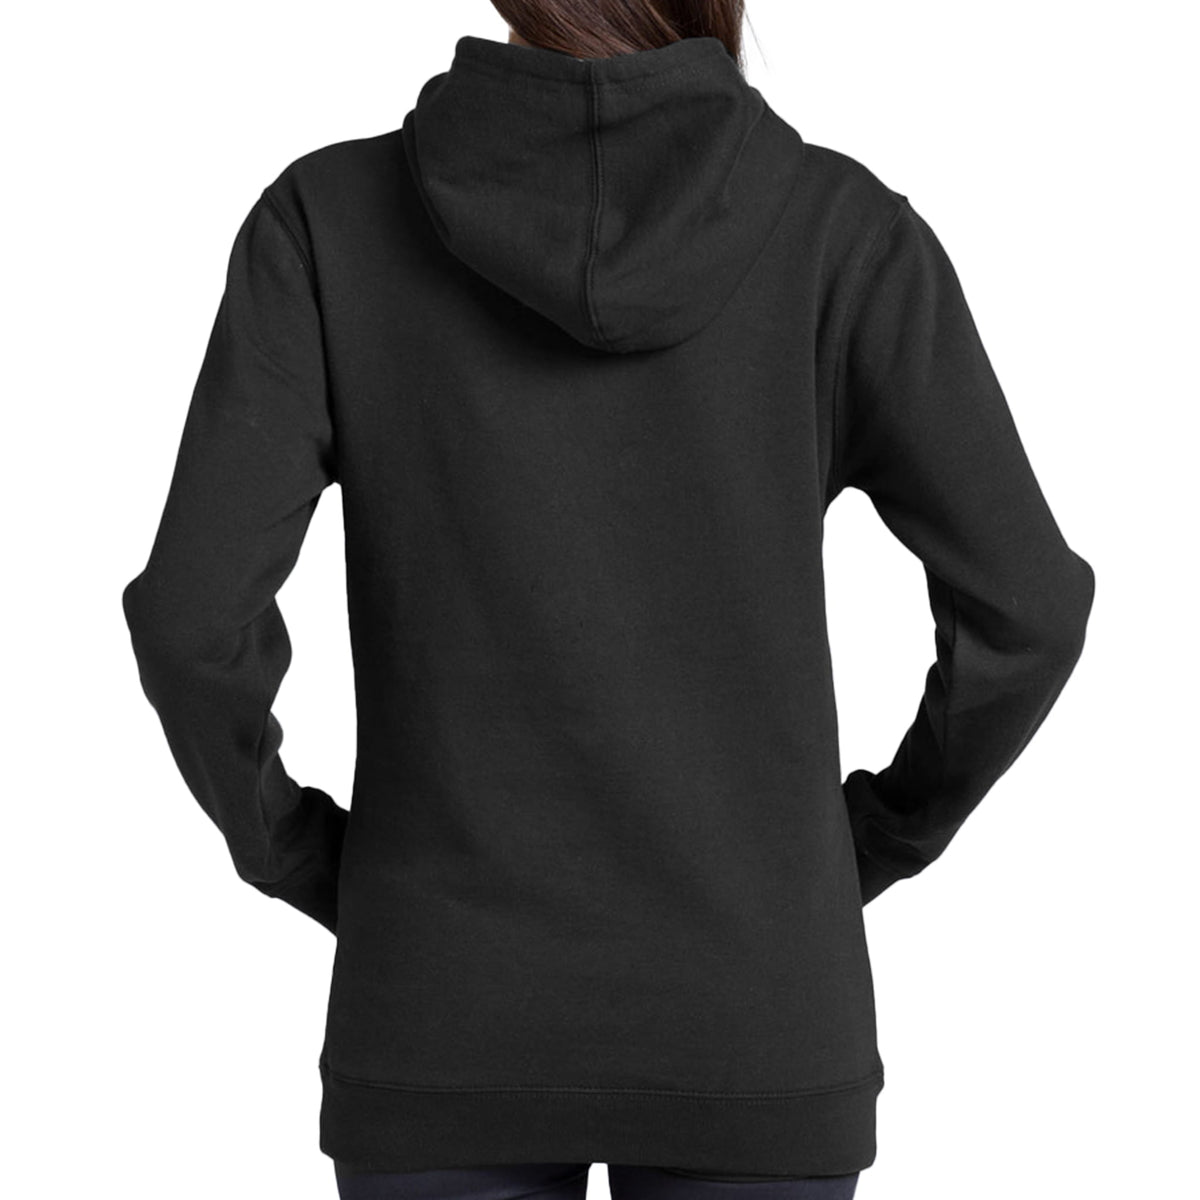 back view of model wearing a black hoodie